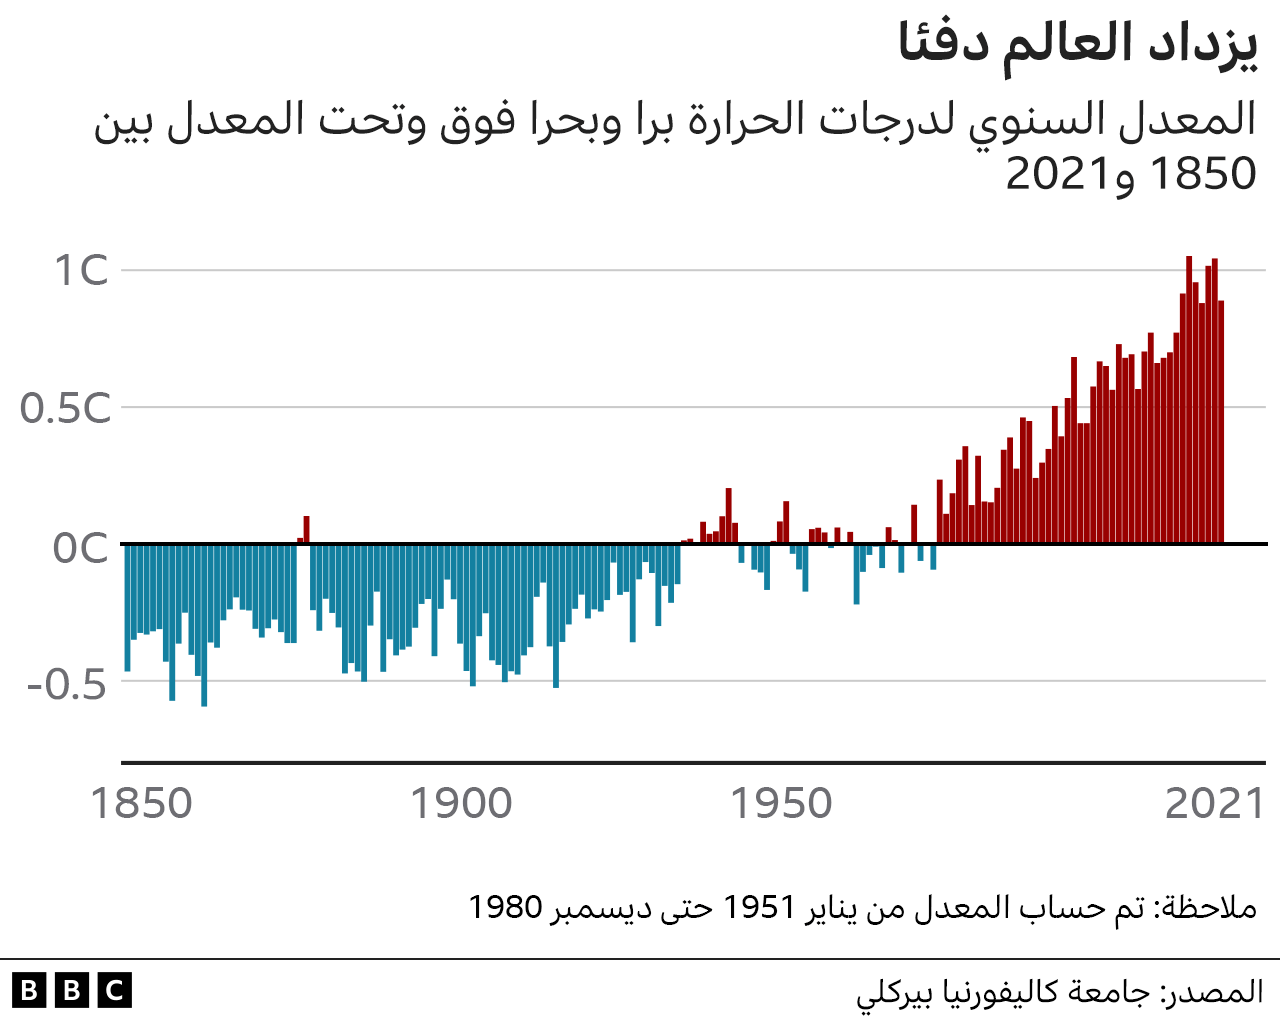 المعدل السنوي لدرجات الحرارة برا وبحرا فوق وتحت المعدل بين 1850 و2021